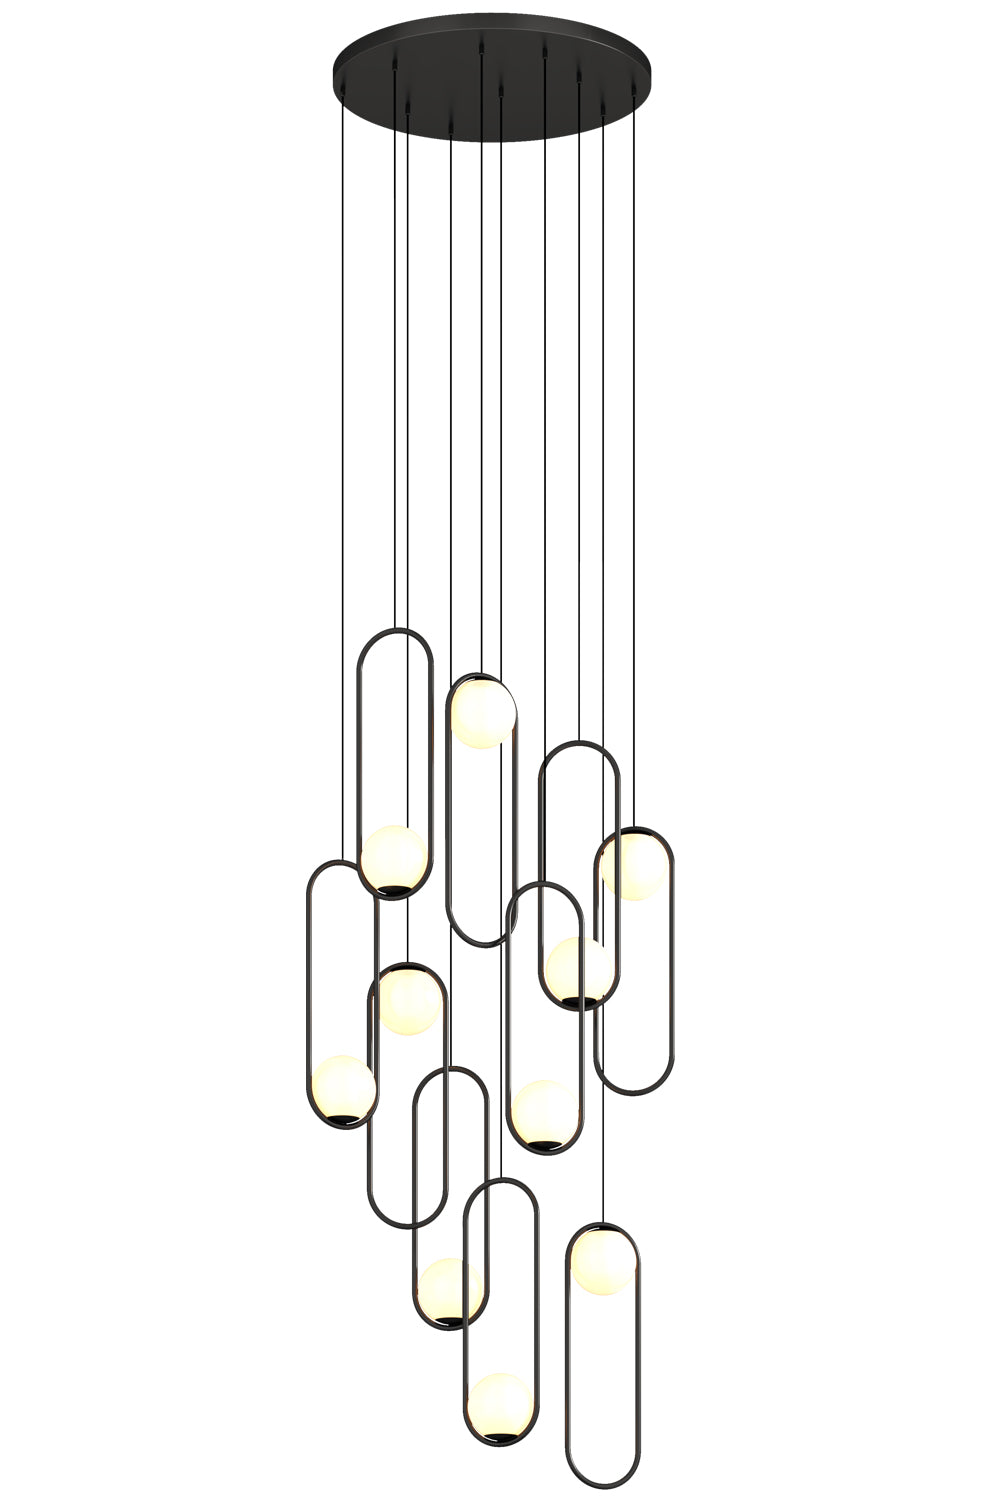 multi-light pendant idea for living room